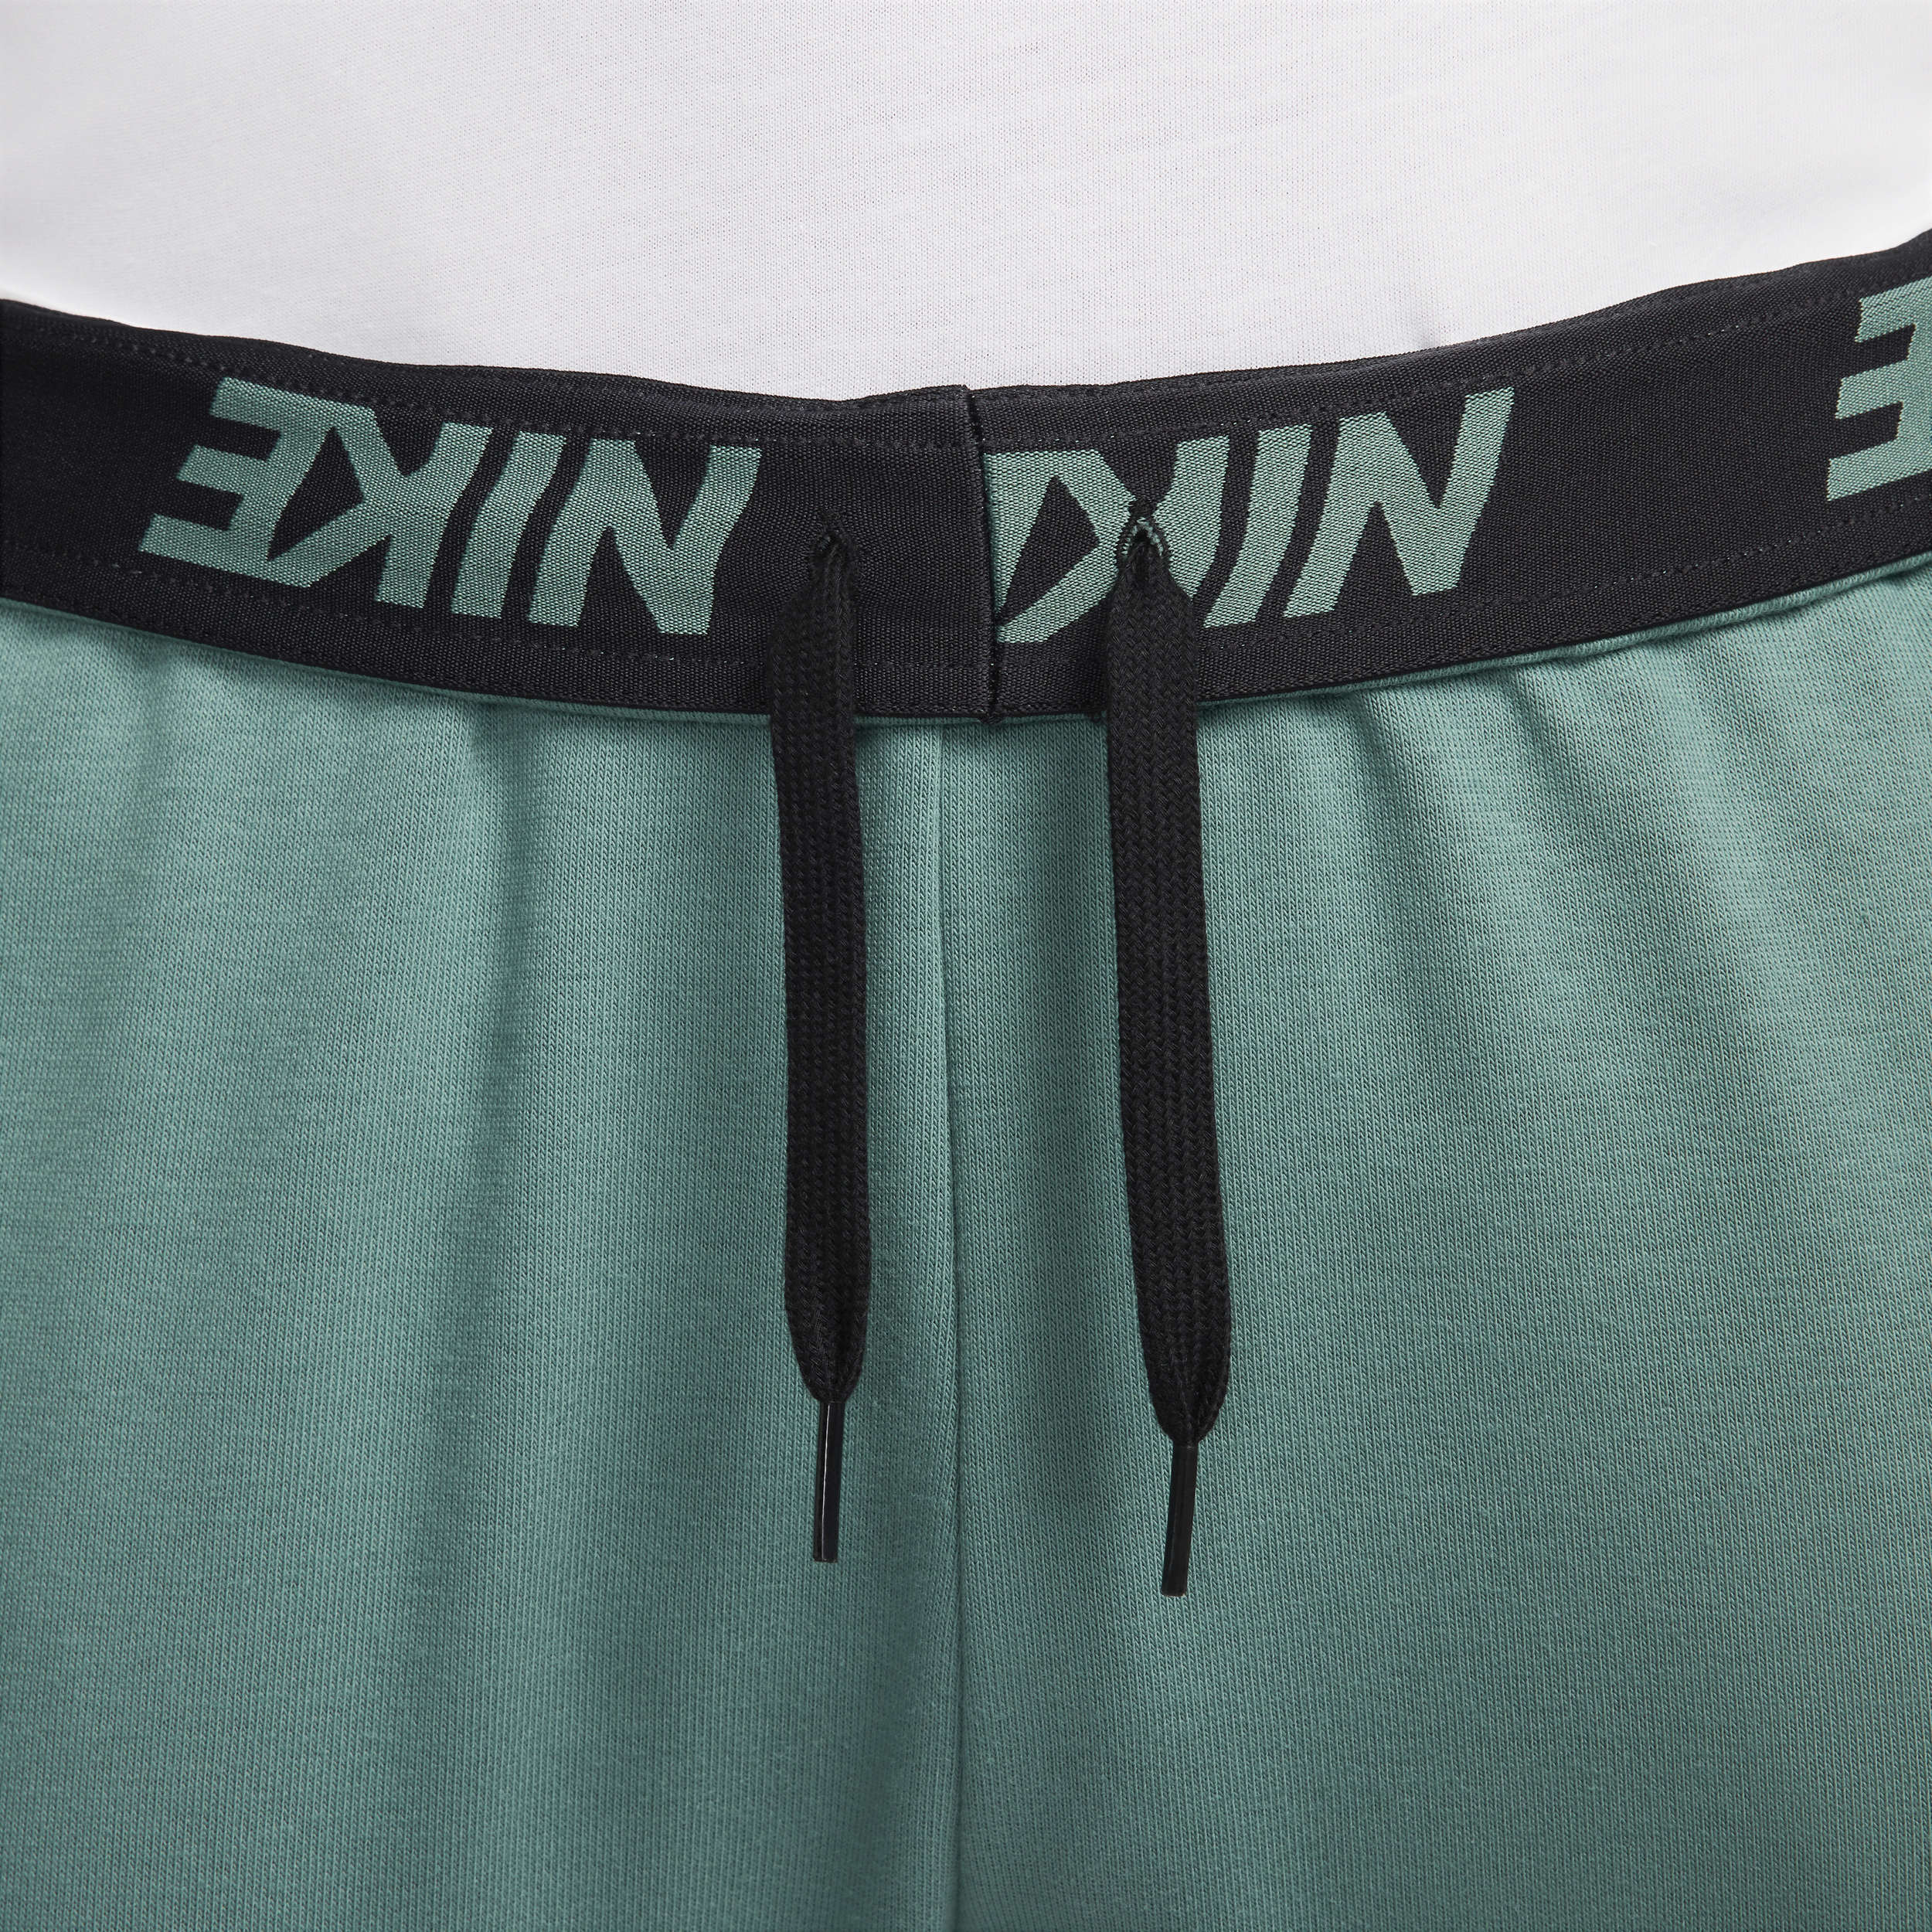 Nike Dry Graphic Dri-FIT toelopende fitnessbroek voor heren Groen